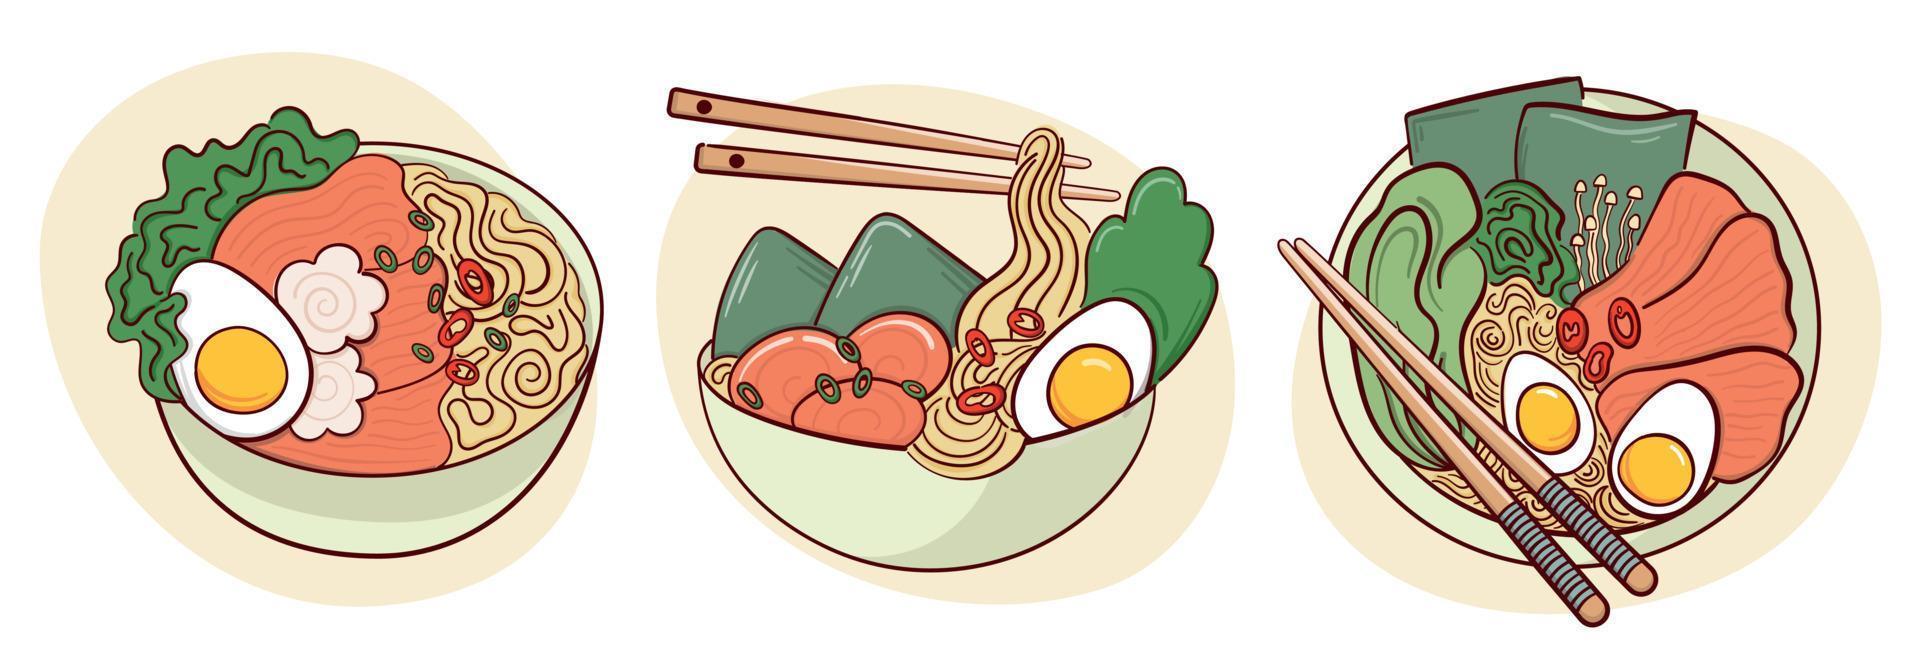 desenhar sopa de ramen em uma ilustração vetorial de tigela. comida tradicional asiática japonesa, culinária, conceito de menu. estilo cartoon doodle. vetor